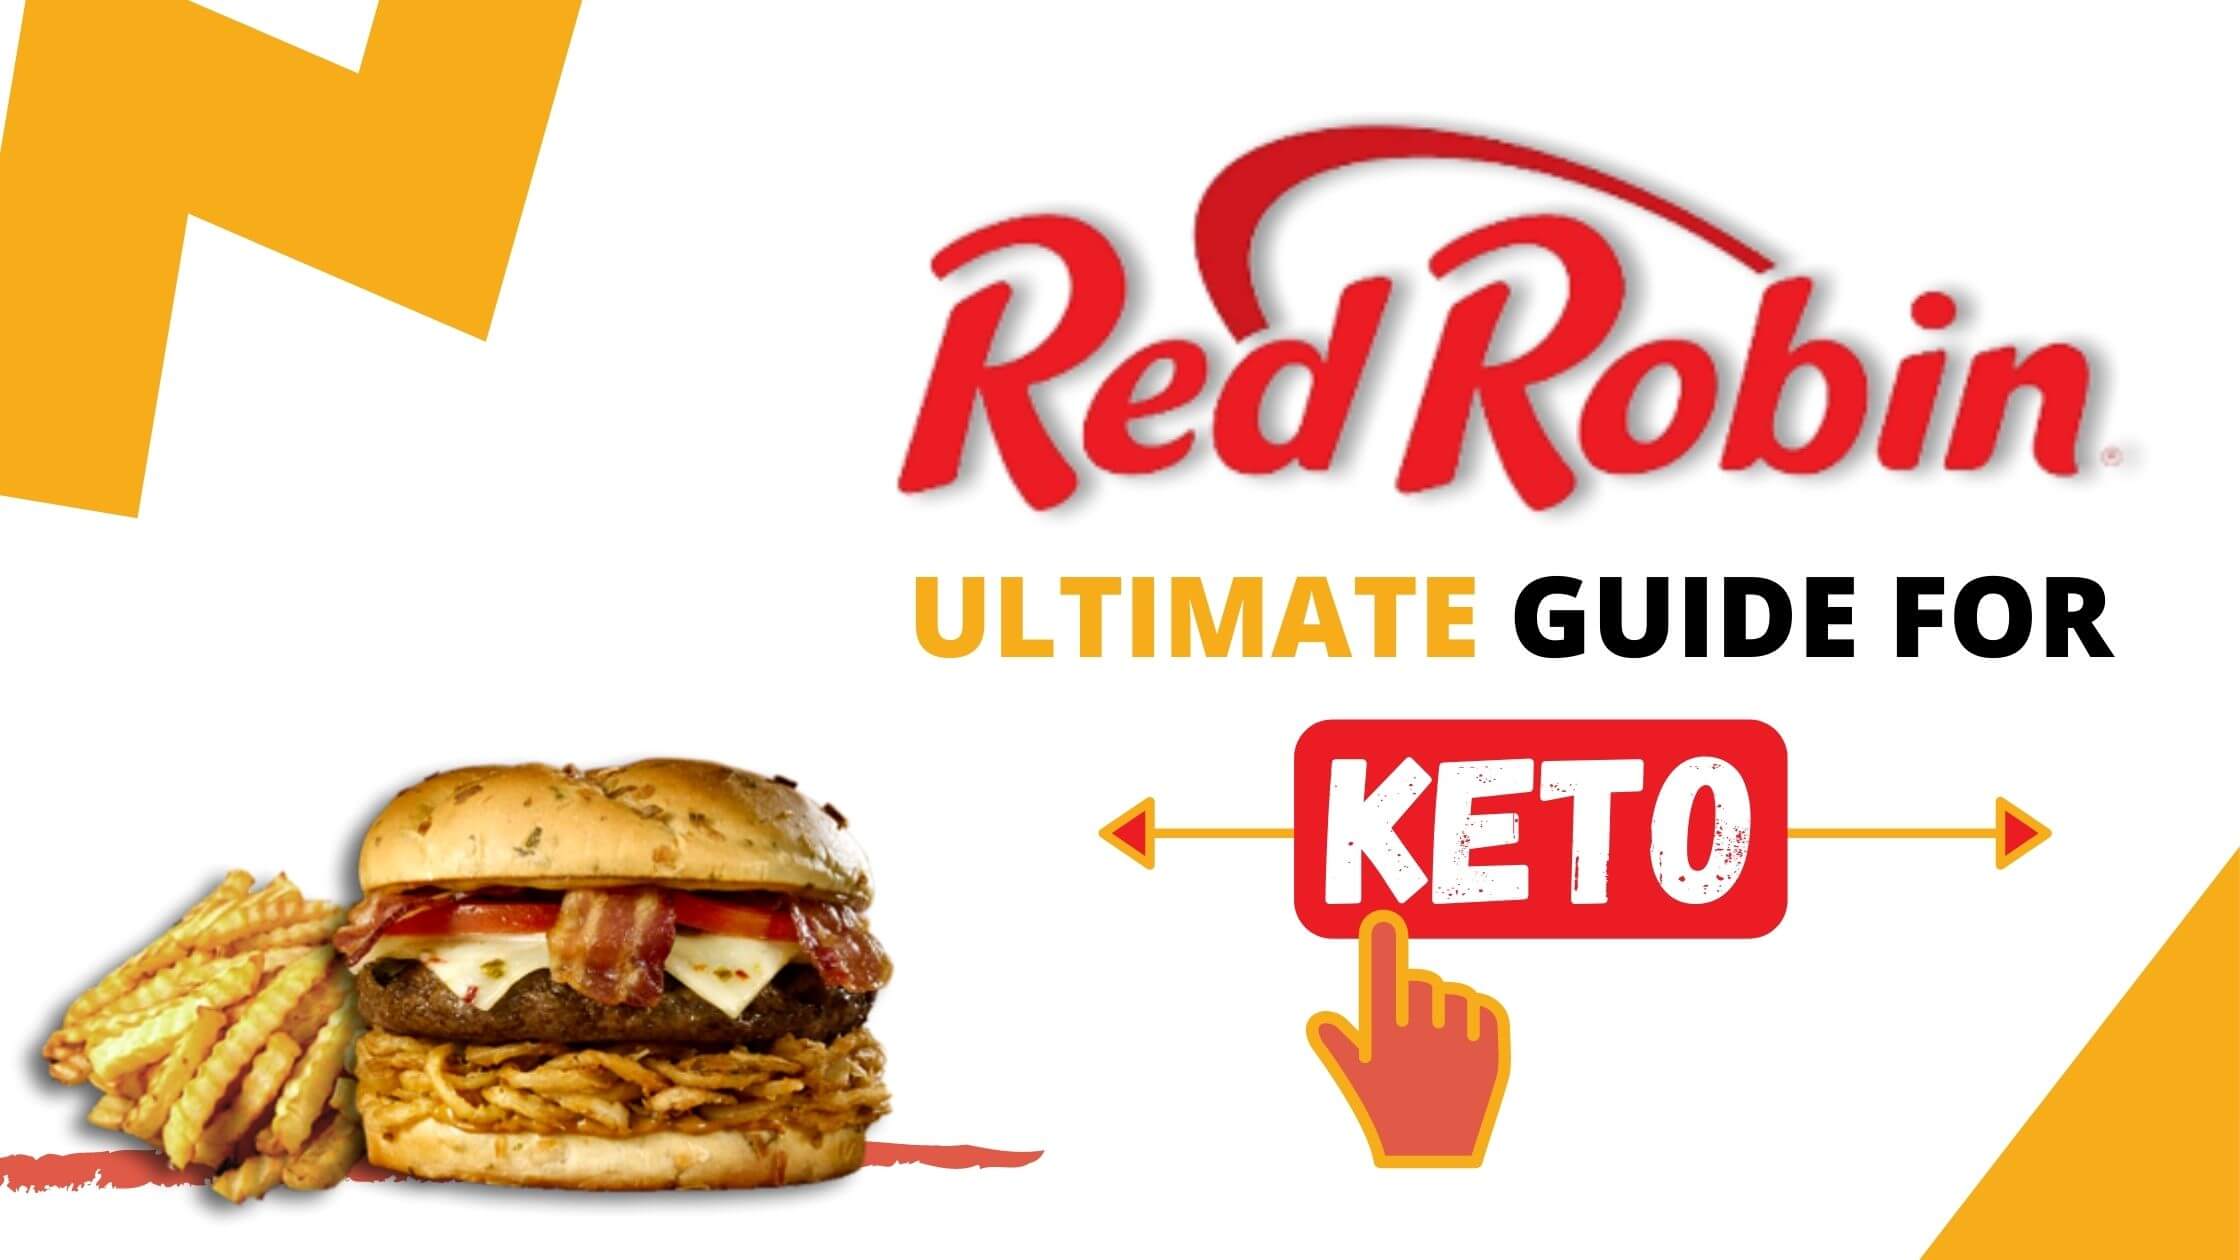 Red Robin Keto Guide